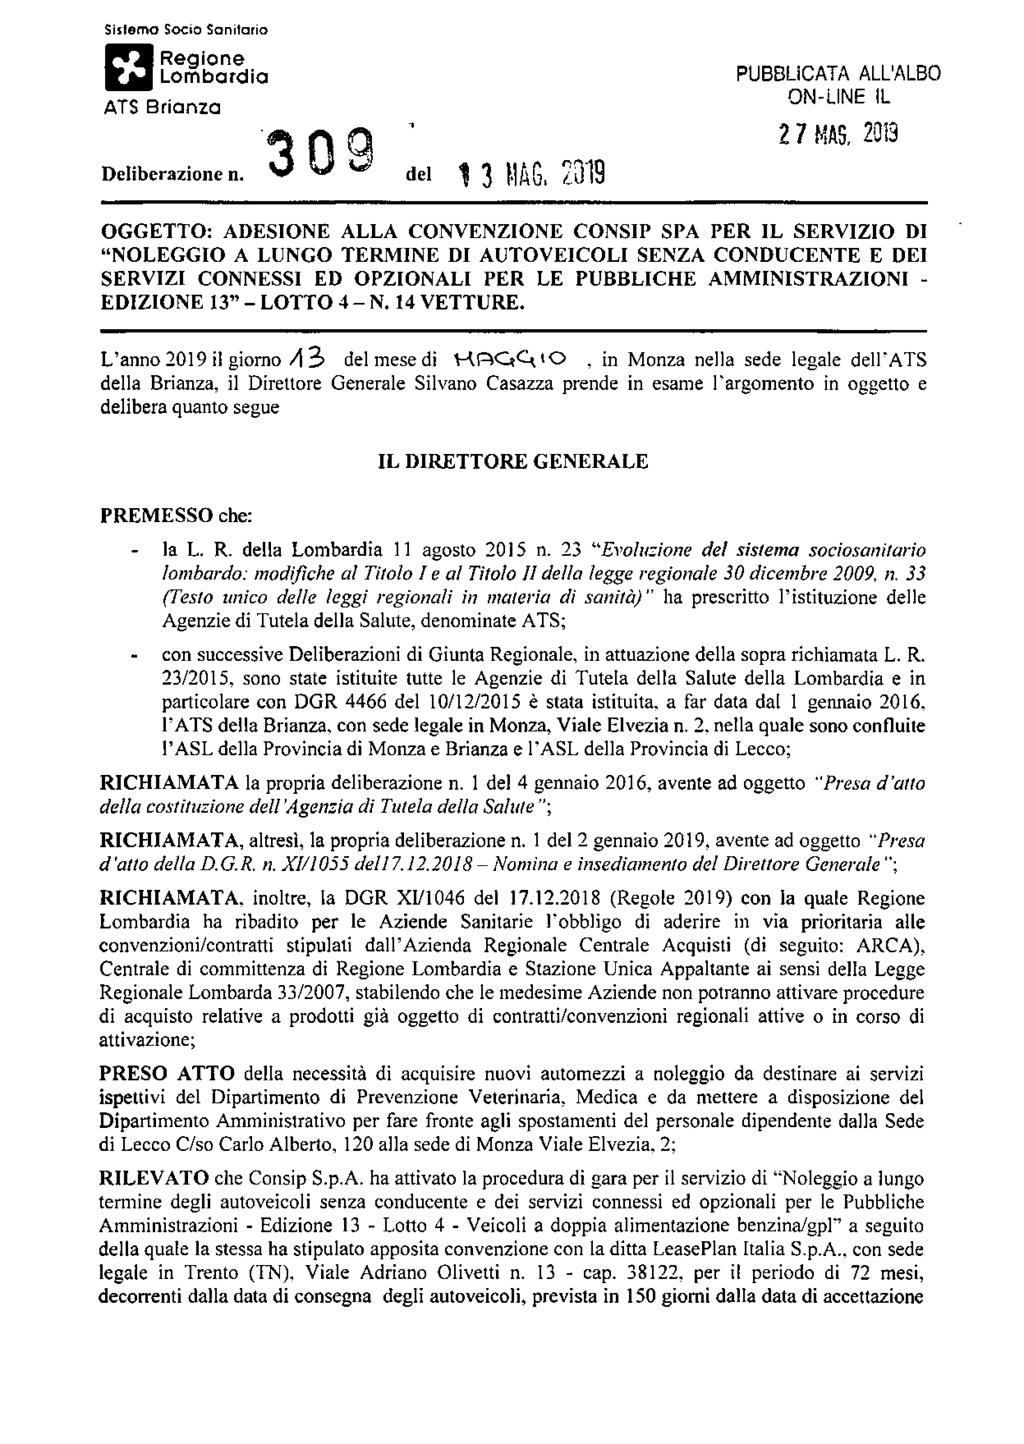 Sistemo Socio Sanitario Regione Lombardia ATS Brianza Deliberazione n. W w ^ dei 13 MAG. 2019 PUBBLICATA ALL'ALBO ON-LINE IL 2 7 MAS.